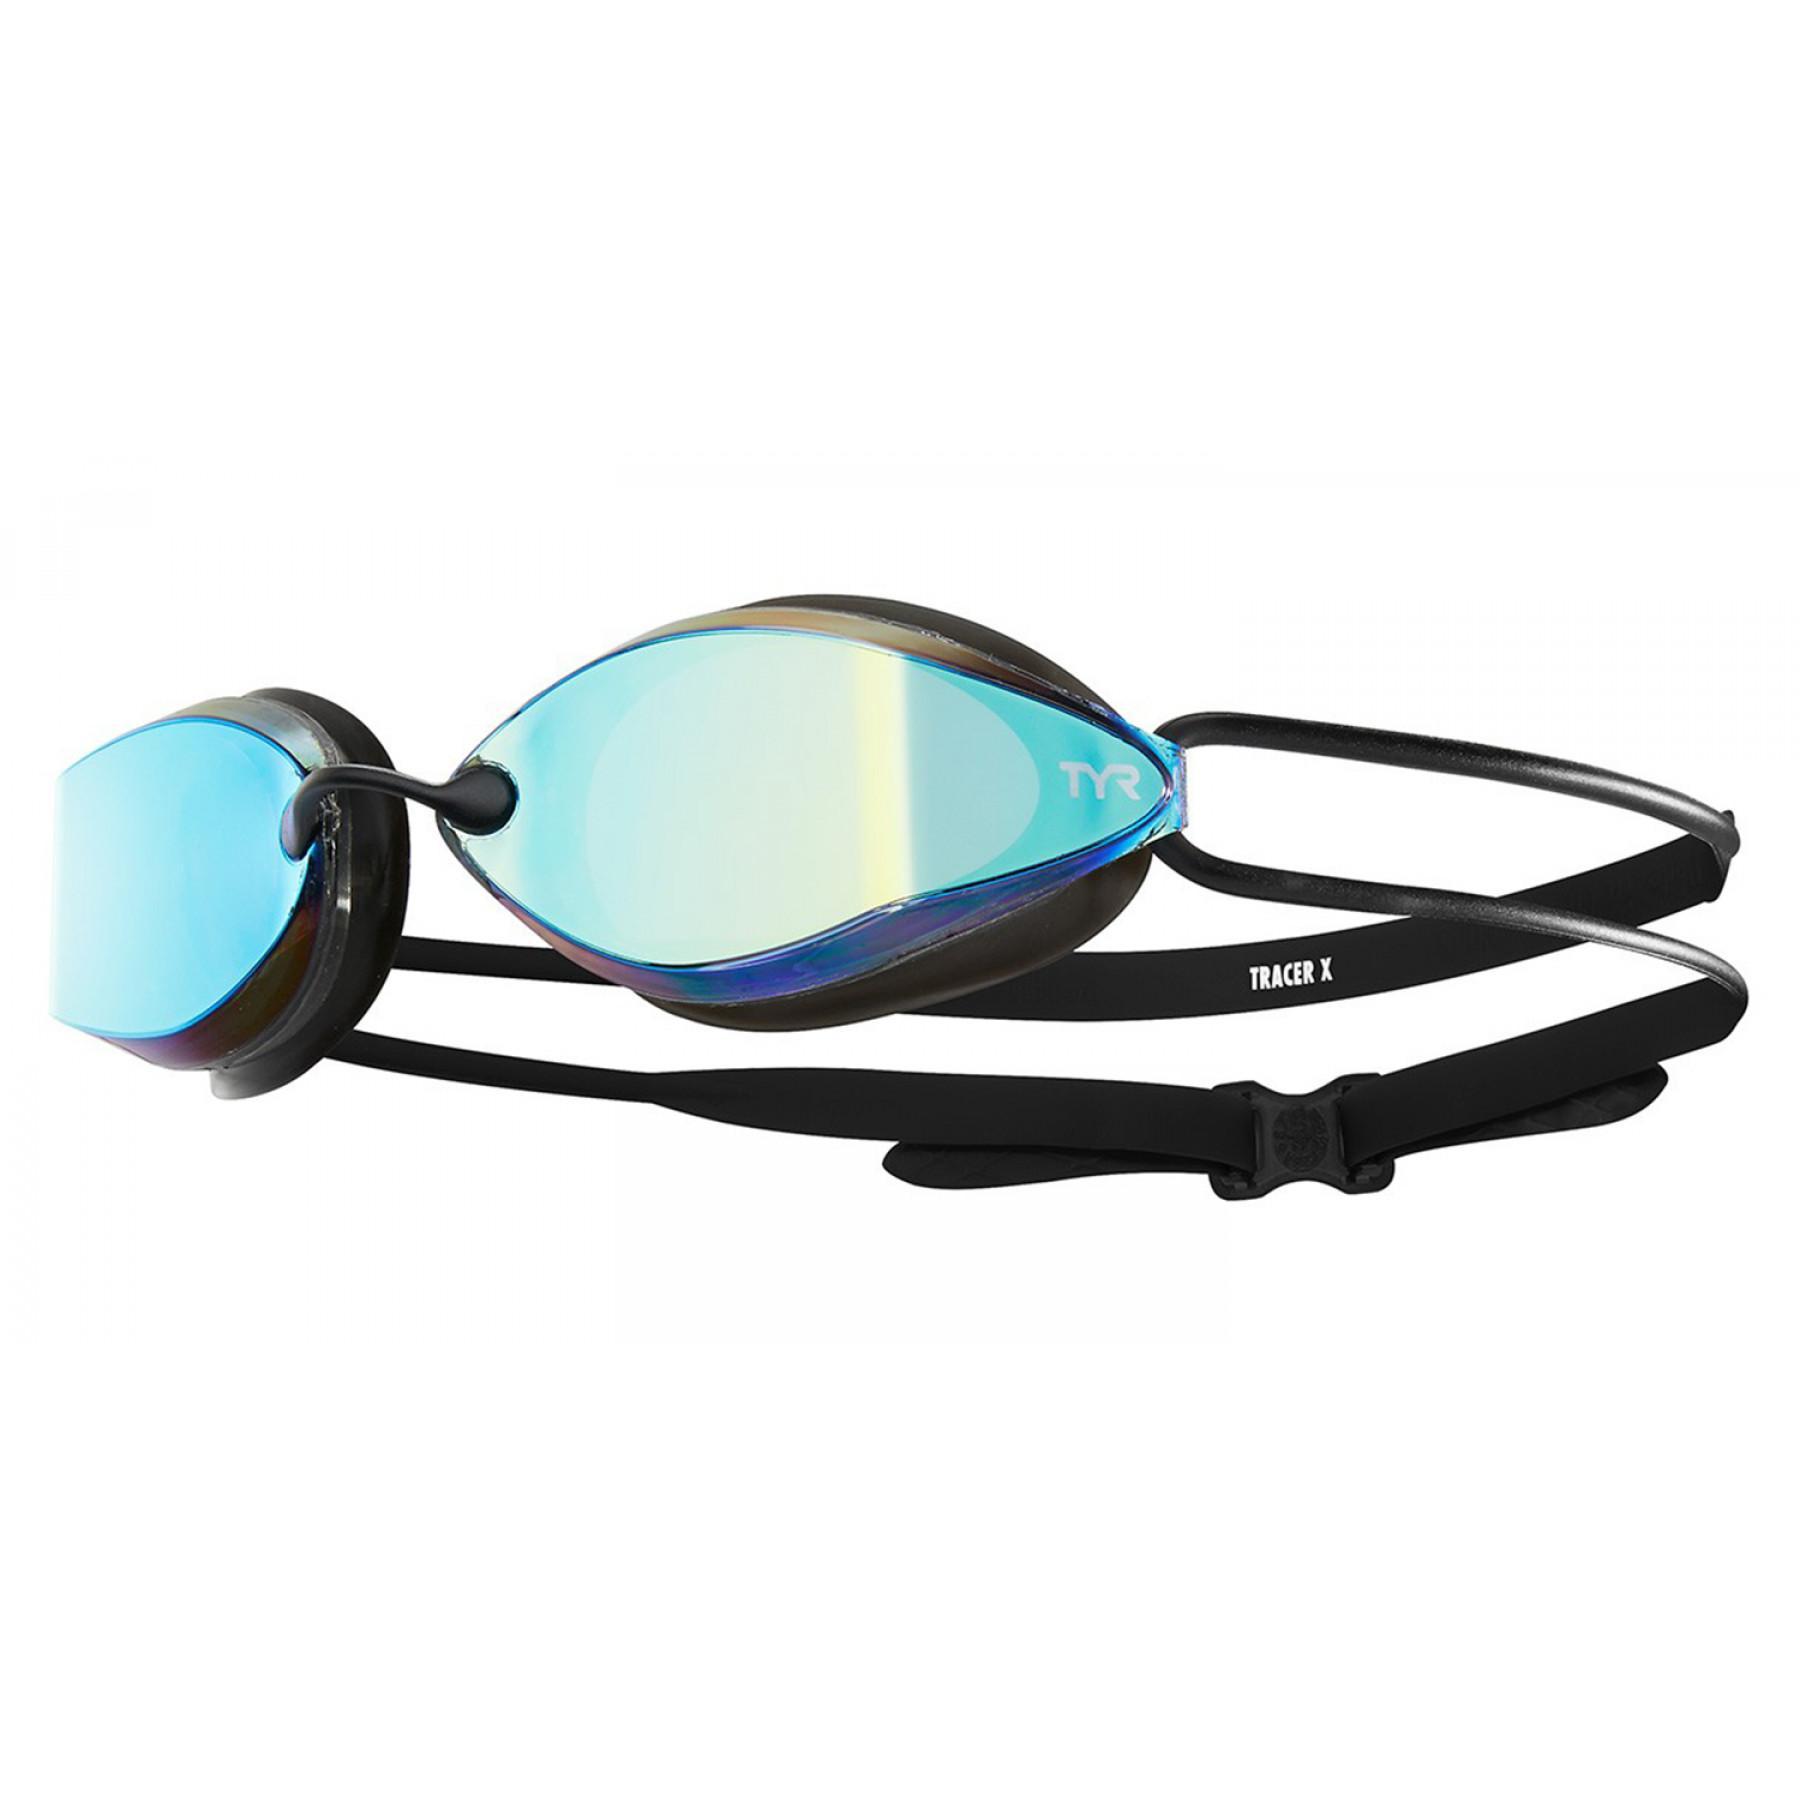 Occhiali da nuoto TYR Tracer X Racing Nano Miroir